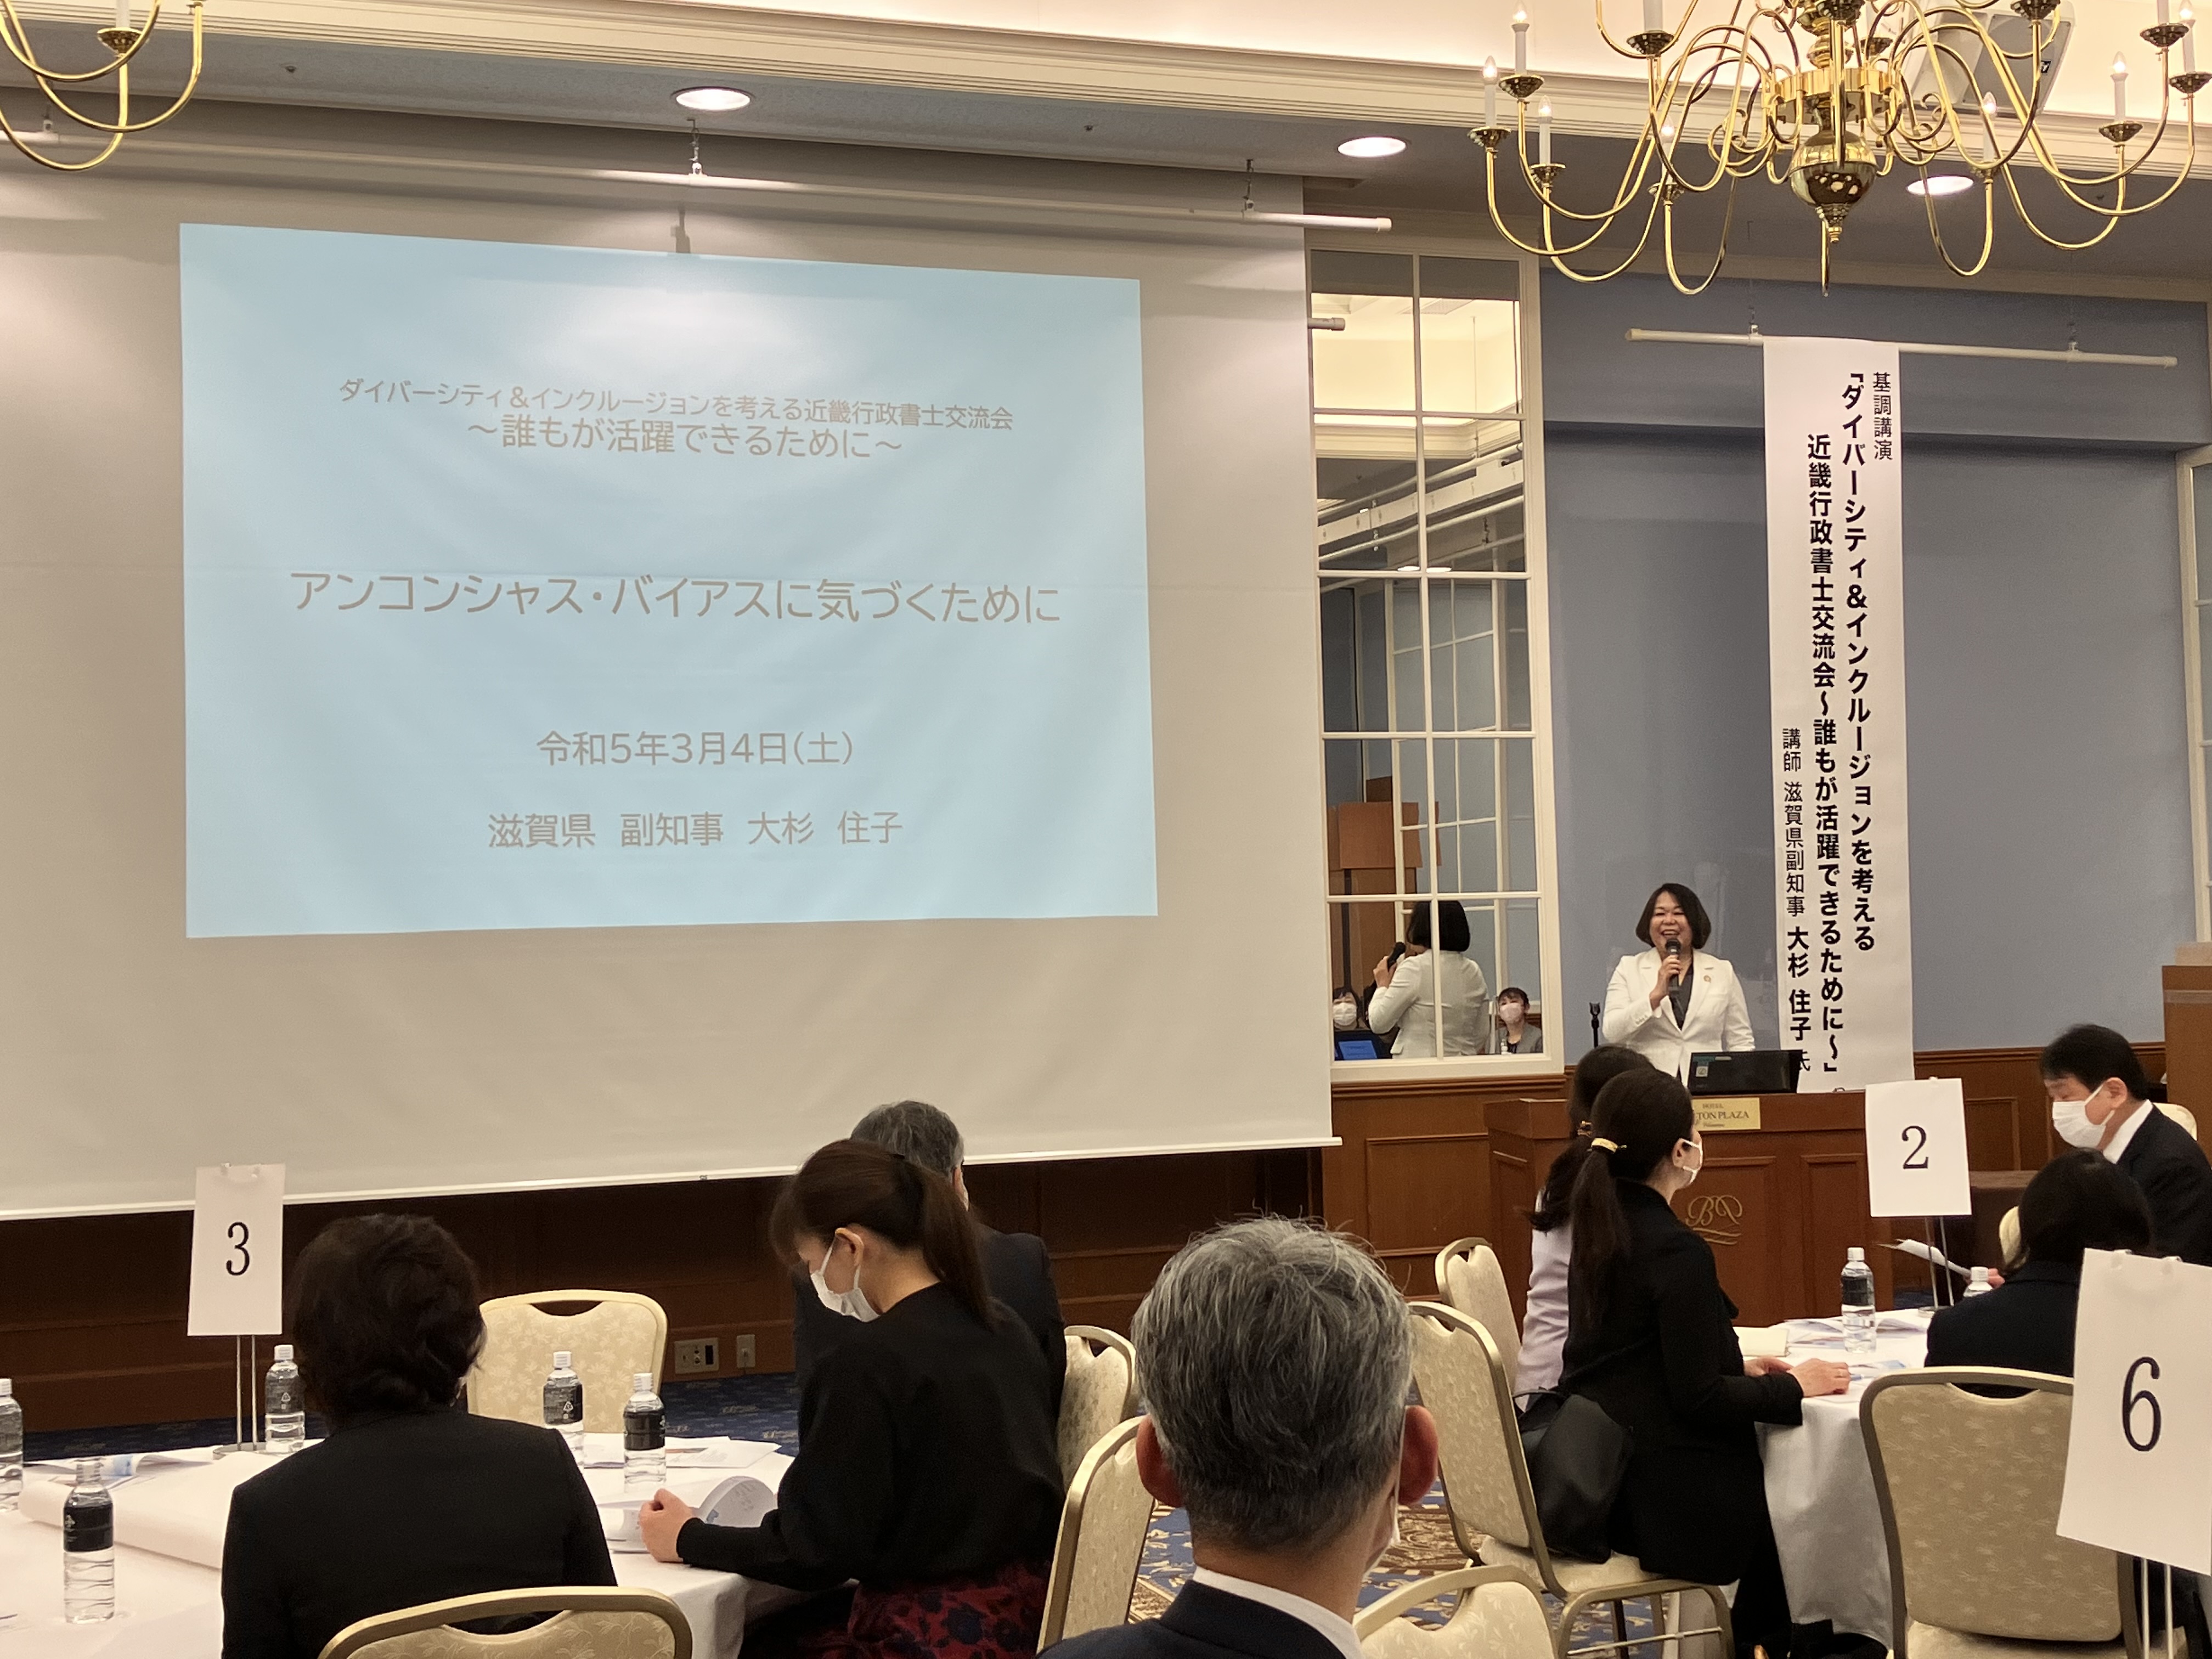 日本行政書士会連合会近畿担当者会議研修会にて、誰もが活躍できる社会の実現に向け講演を行う。